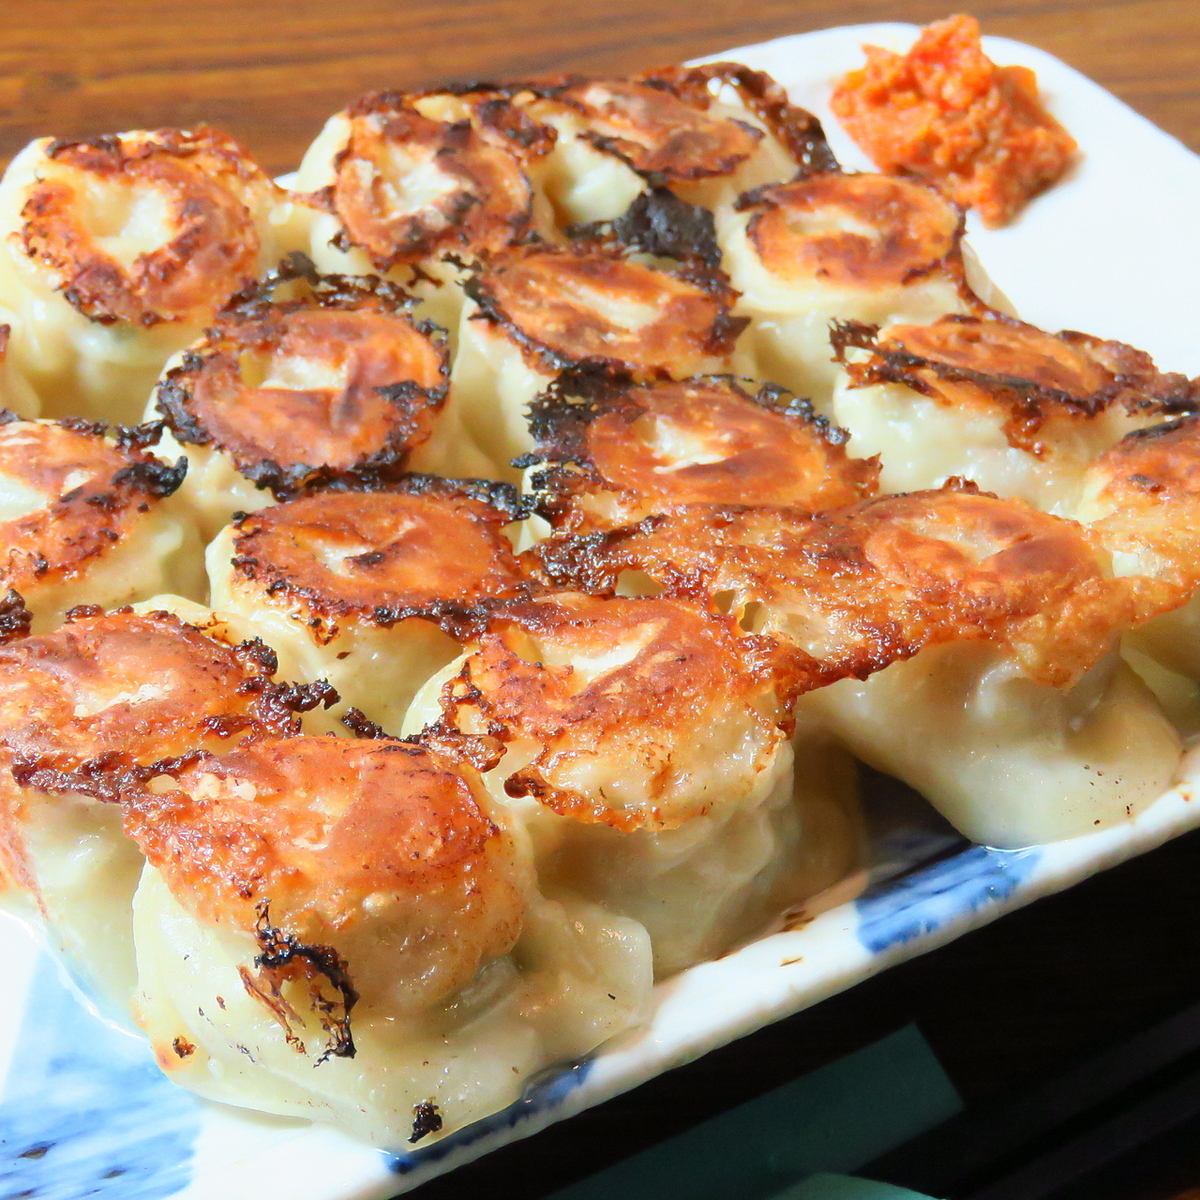 구운 만두 코스 6품 4000엔♪ 수제 구이 만두를 즐겨 주세요.